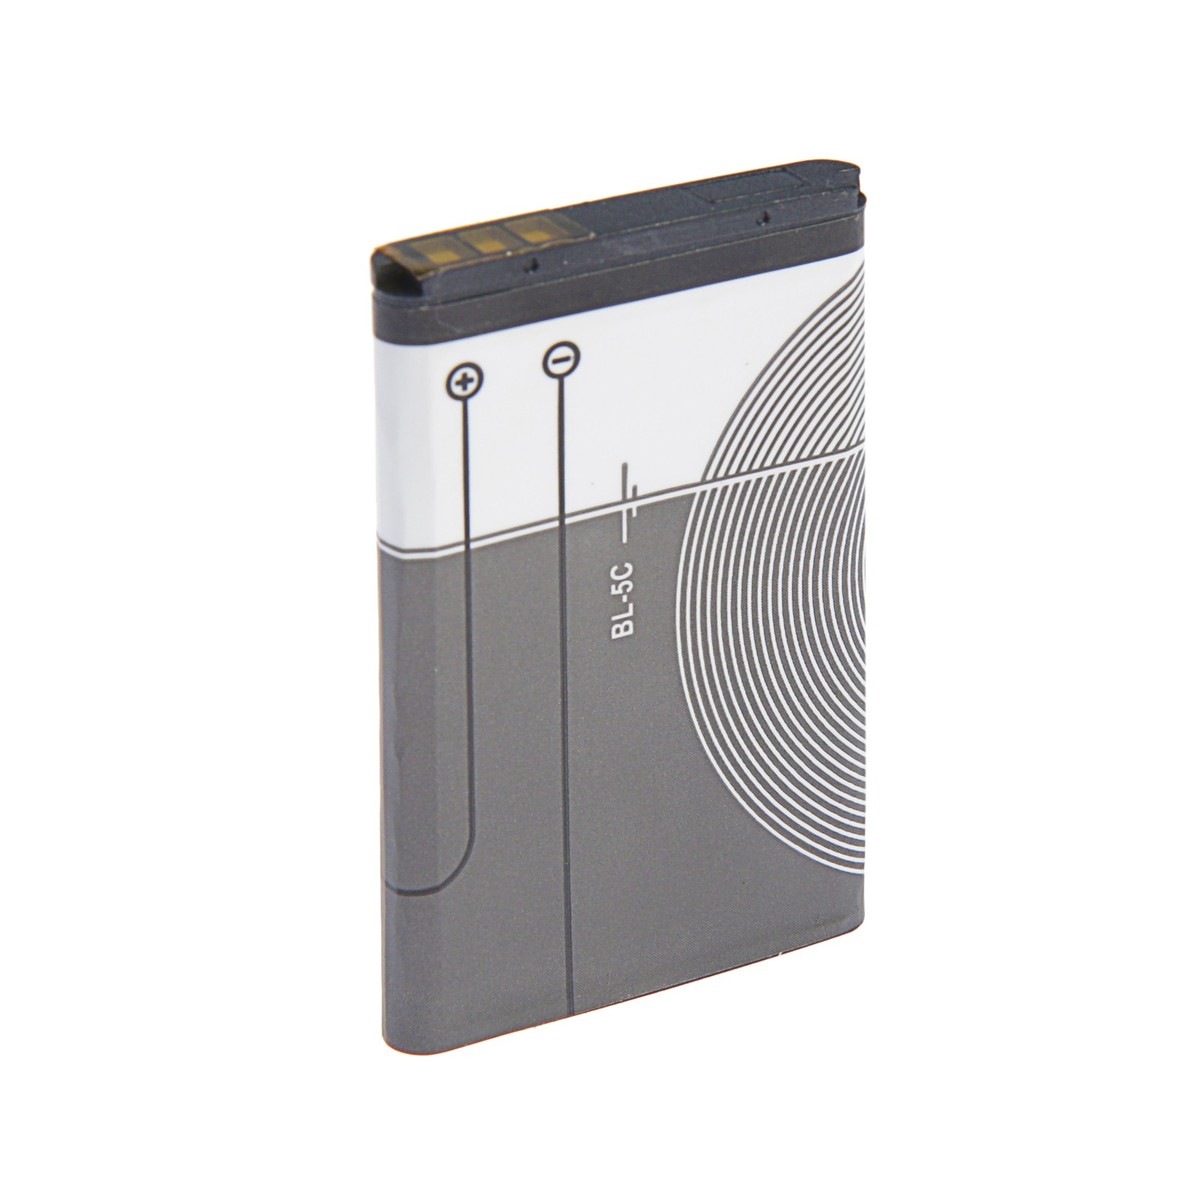 Аккумулятор luazon bl-5c, для портативных колонок, мобильных устройств, 3.7 в, 1020 мач аккумулятор luazon bl 5c для портативных колонок мобильных устройств 3 7 в 1020 мач